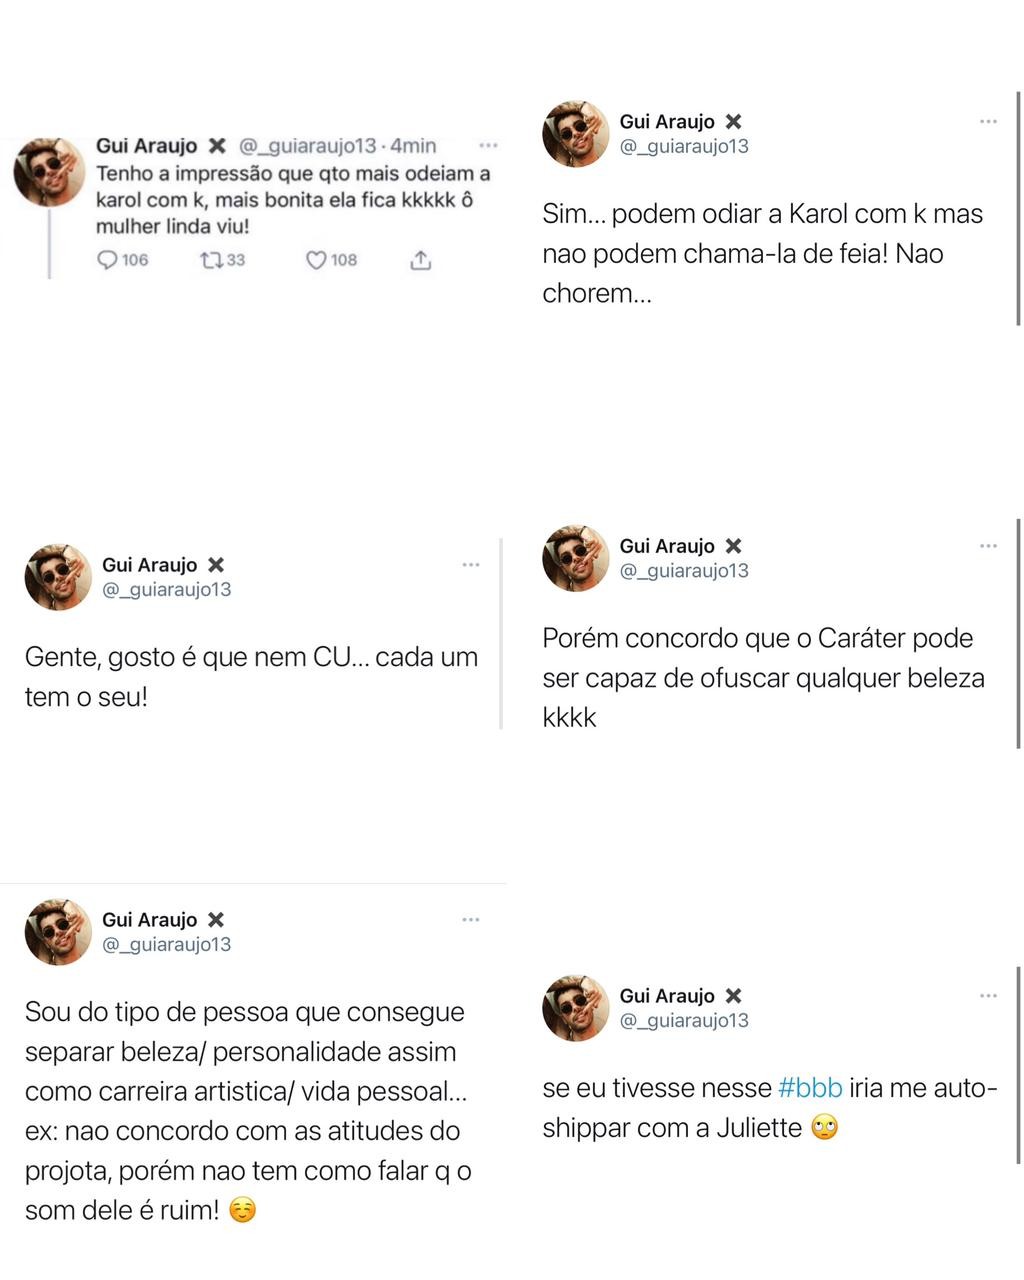 Gui Araújo exalta beleza de Karol Conká (Foto: Reprodução/Instagram e Twitter)